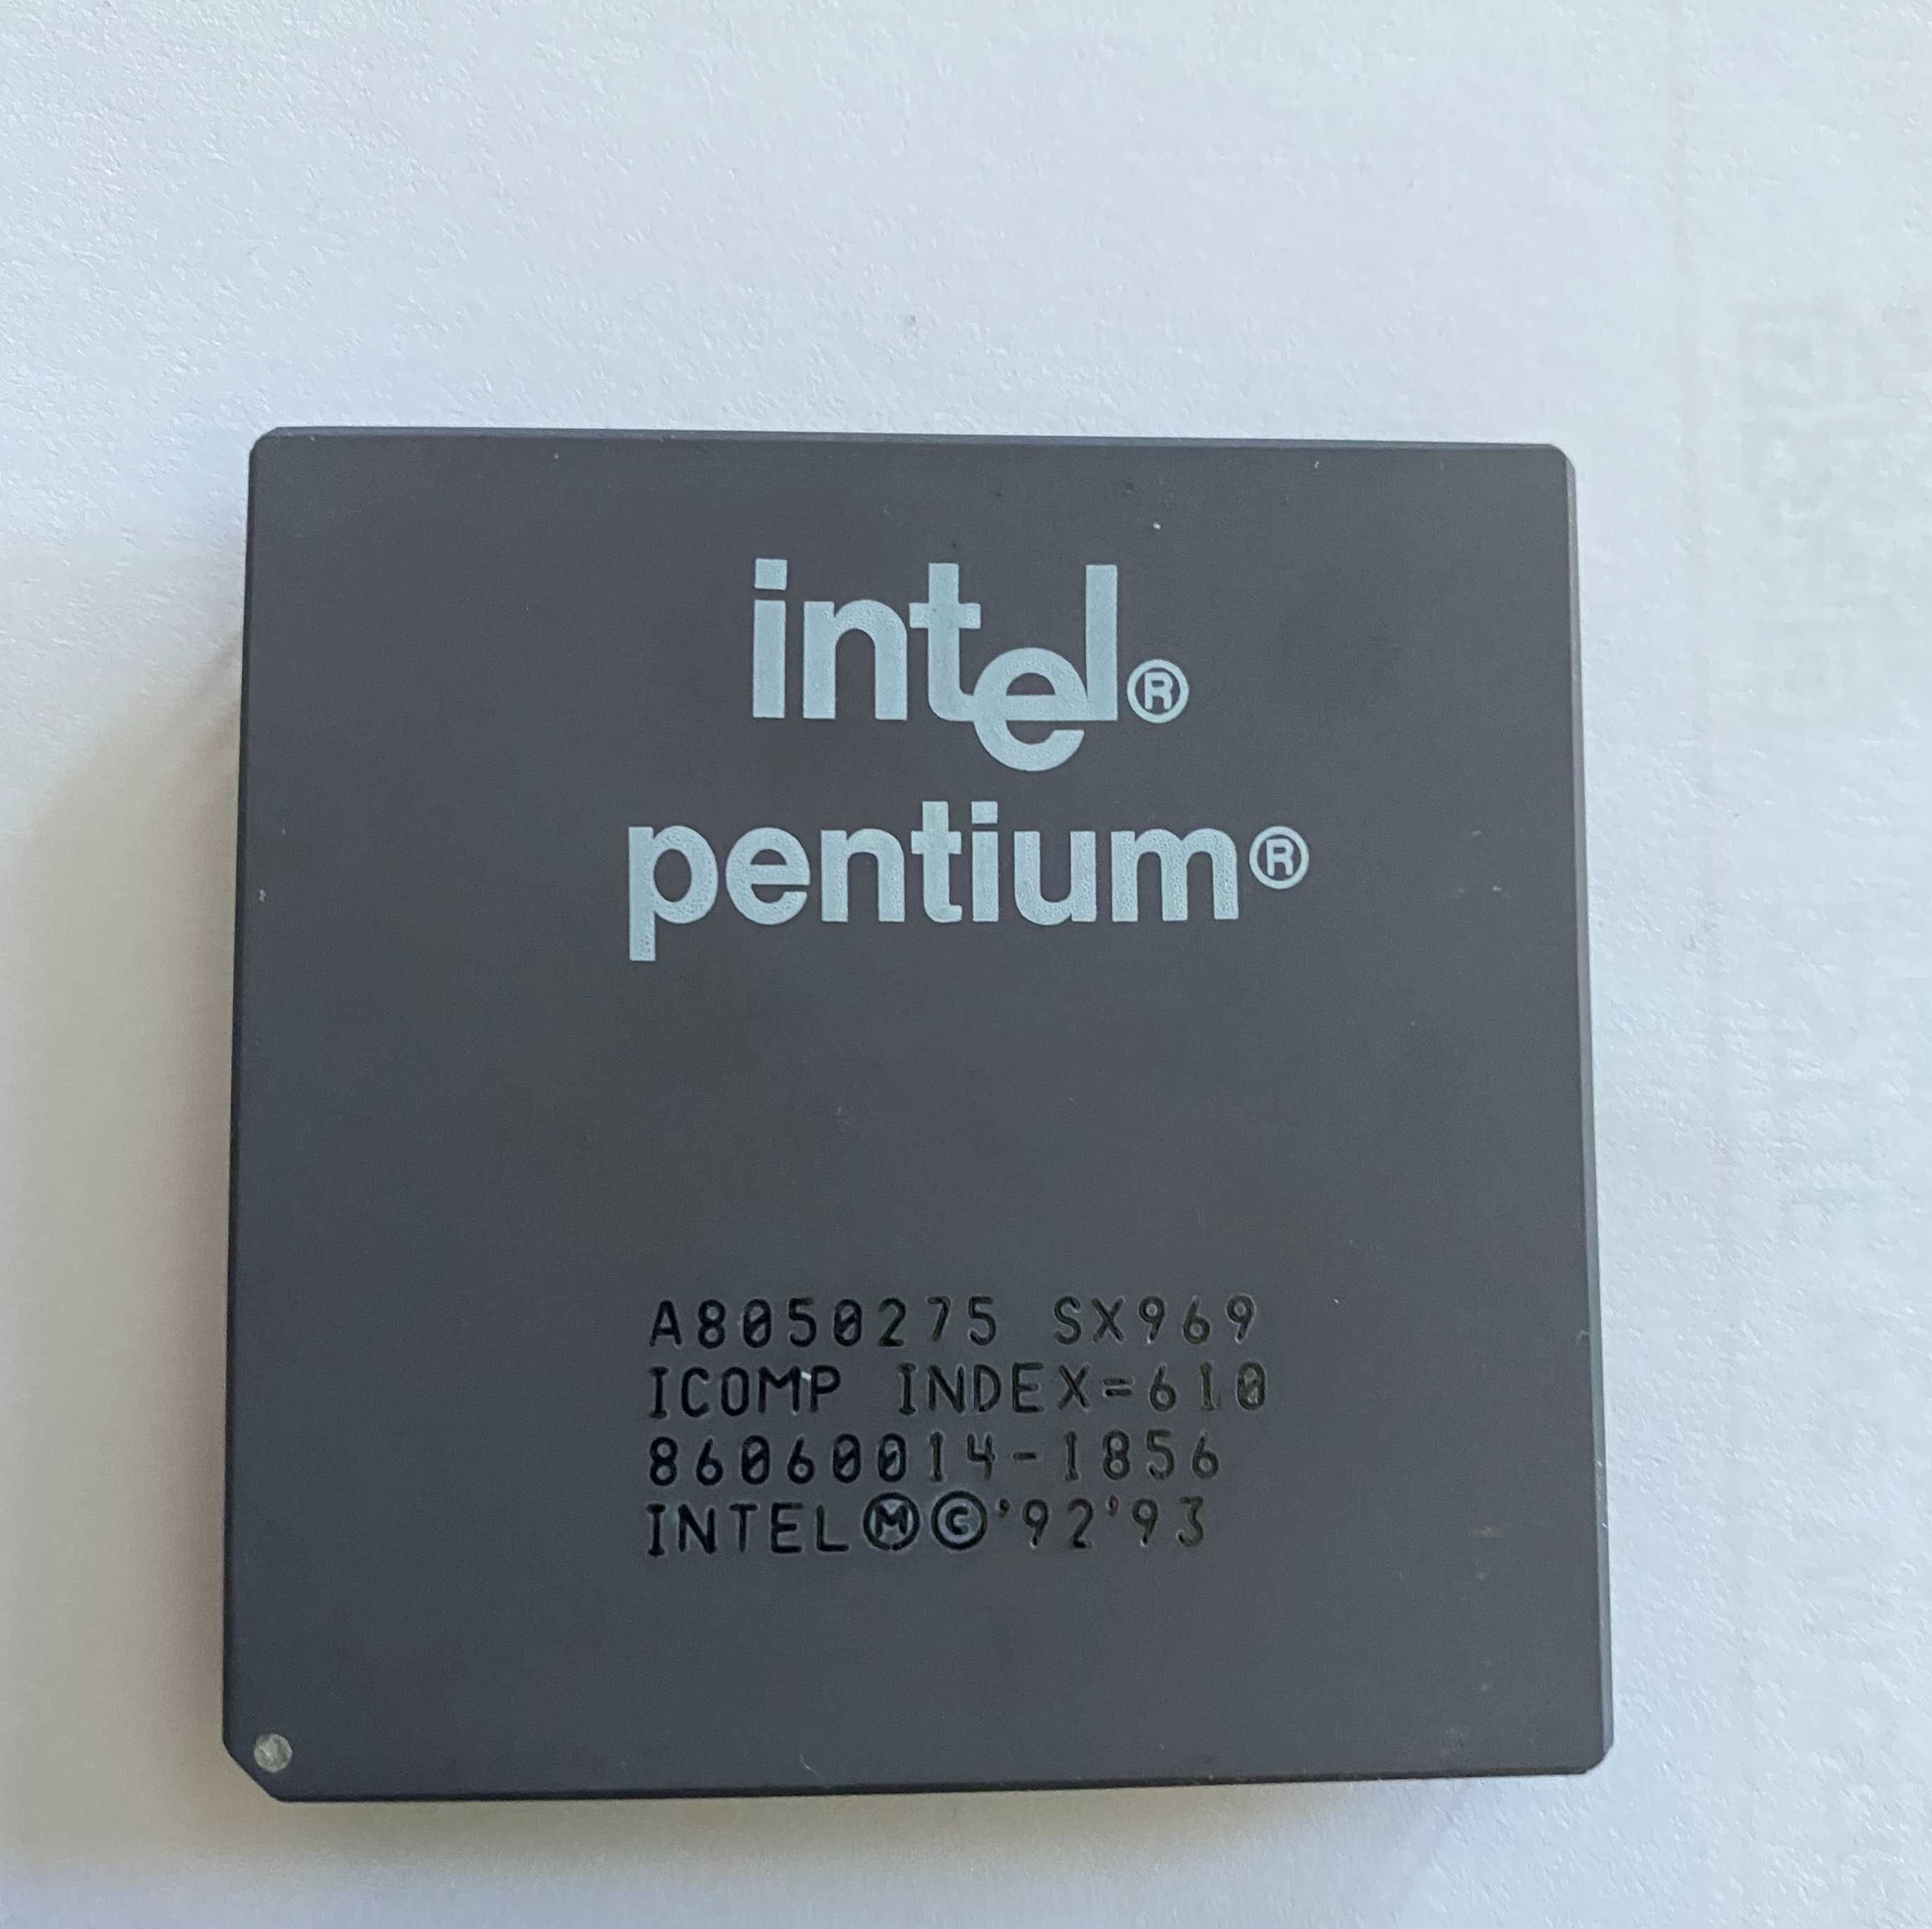 Retro procesor Intel Pentium 75 SX969